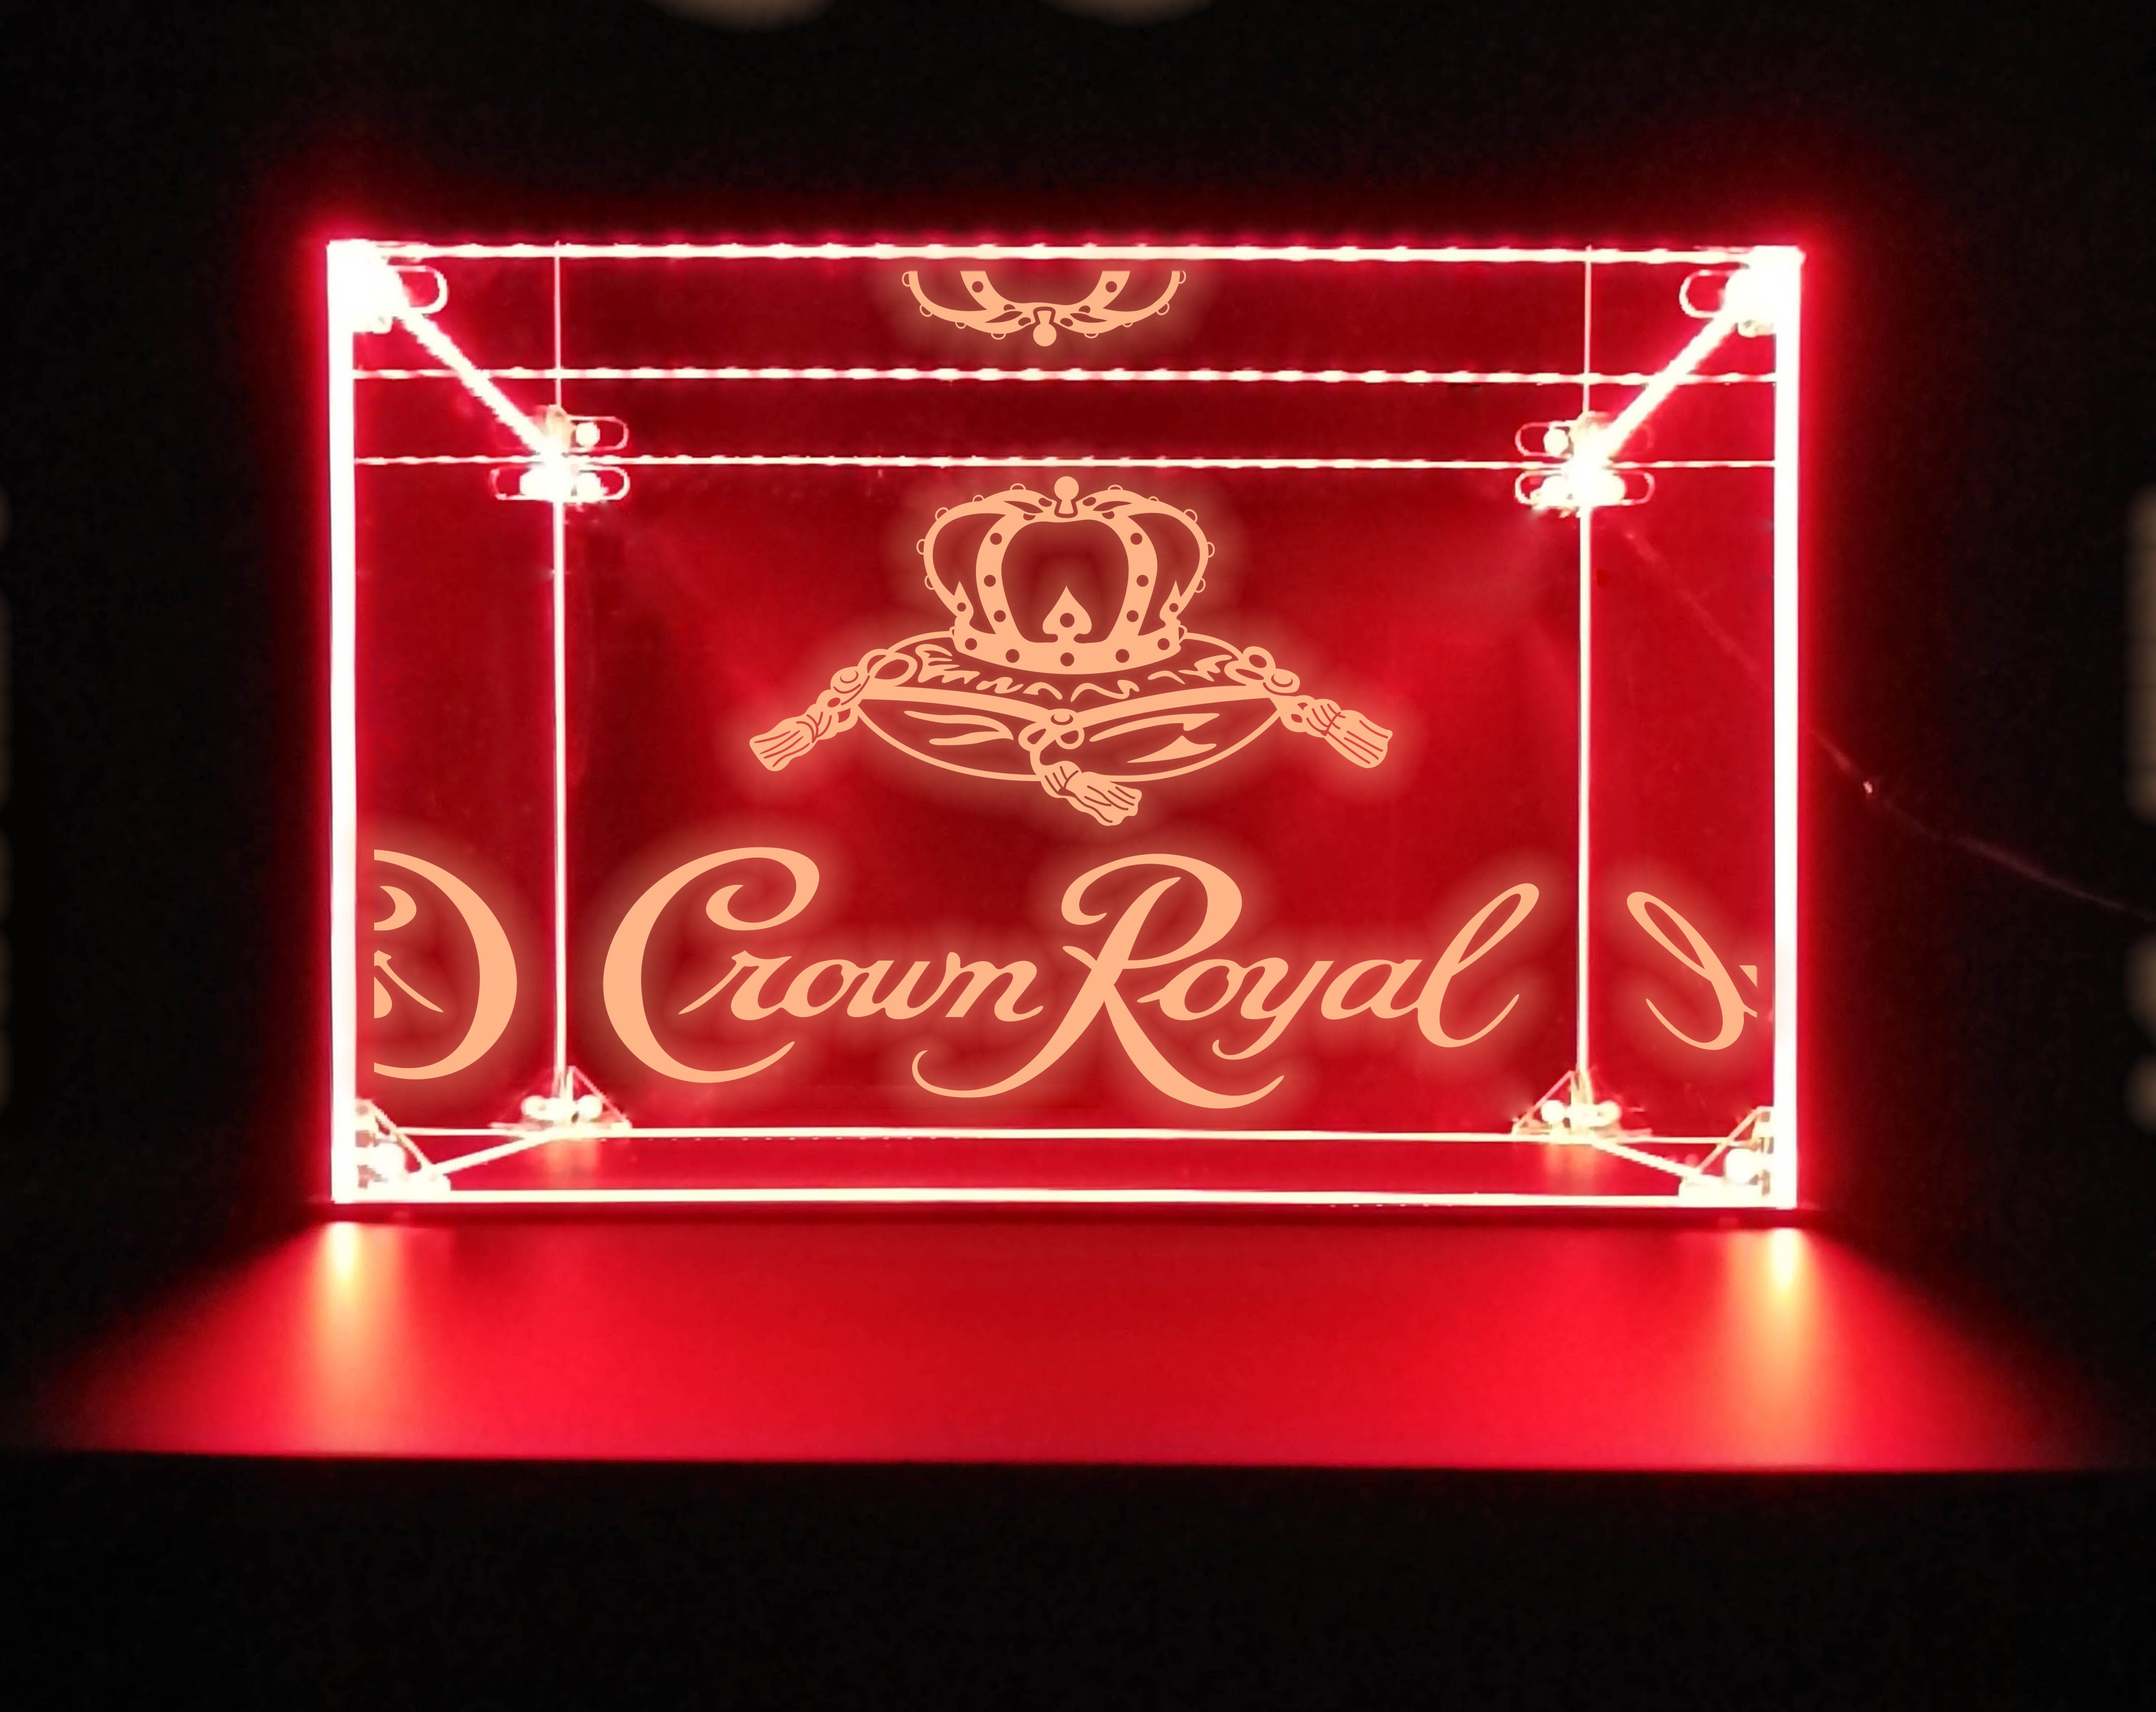 LED Display Case For Crown Royal Bar Liquor Bottles